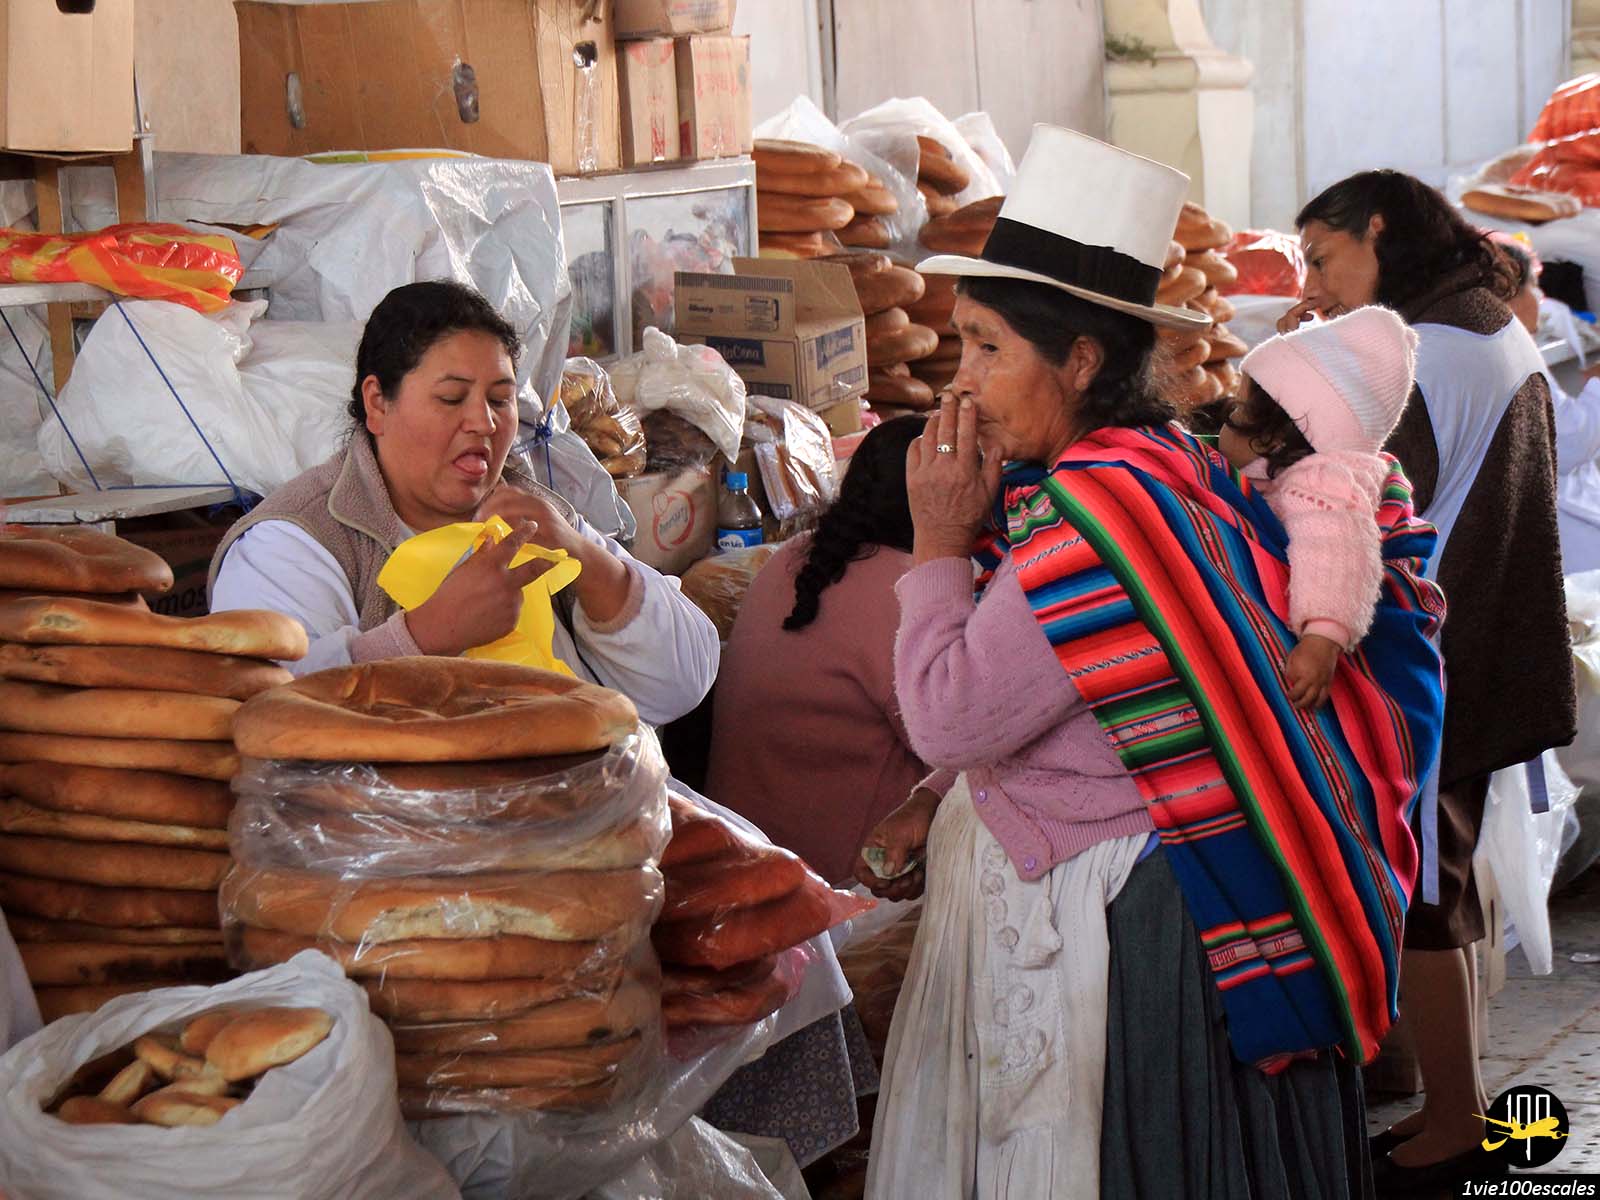 Le marché de San Pedro est l'un des endroits les plus populaires de Cusco, non seulement pour les touristes mais aussi pour les locaux